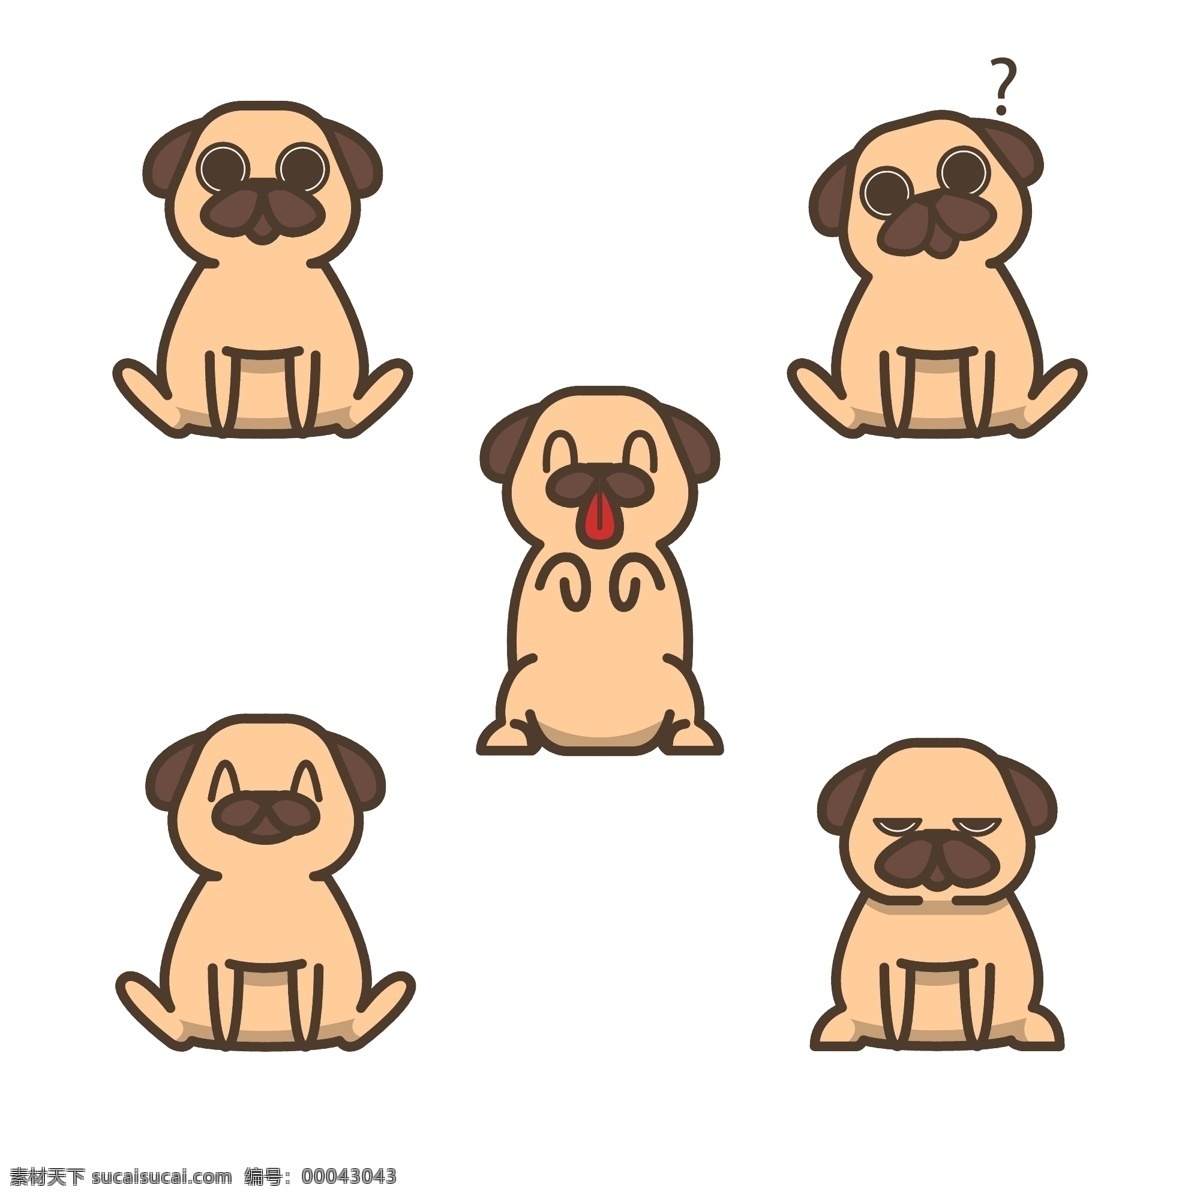 表情 插画 柴犬 动物 狗 卡通 卡通狗 可爱 可爱宠物 犬 舌头 手绘 语言 风格 哈巴狗